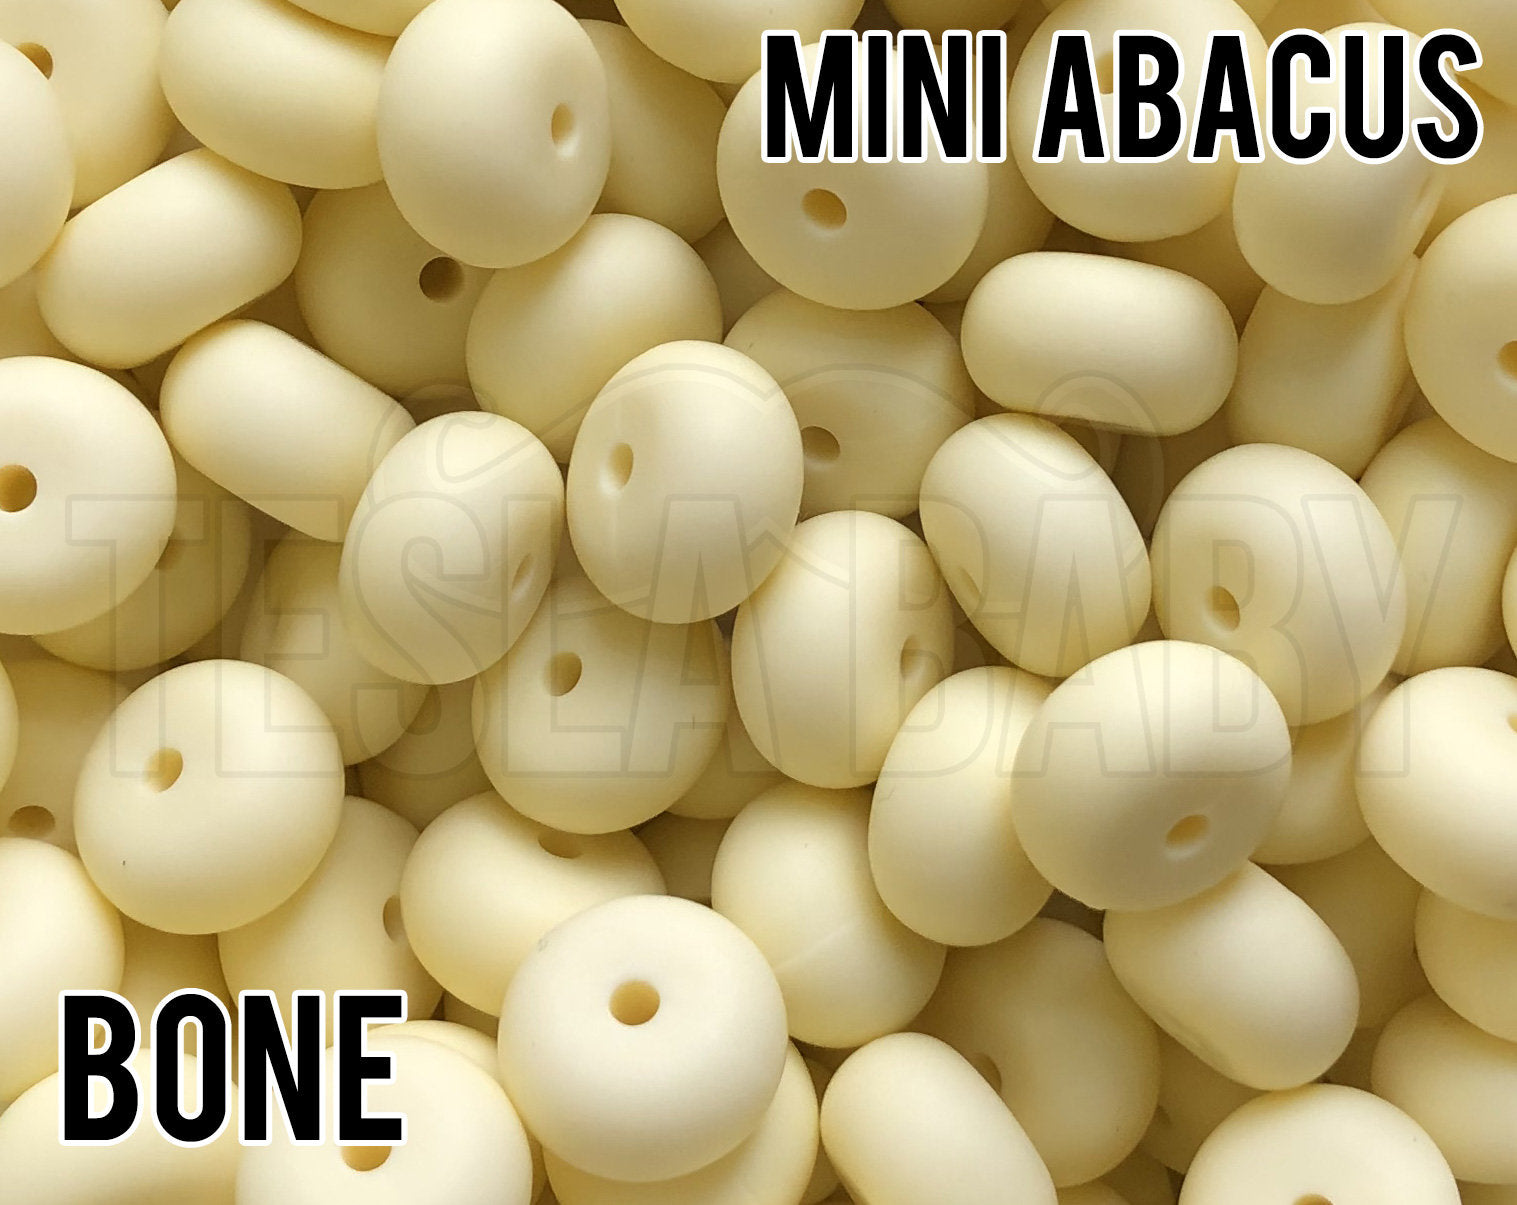 Mini Abacus Bone Silicone Beads 5-1,000 (aka Light Yellow, Ivory) - Bulk Silicone Beads Wholesale